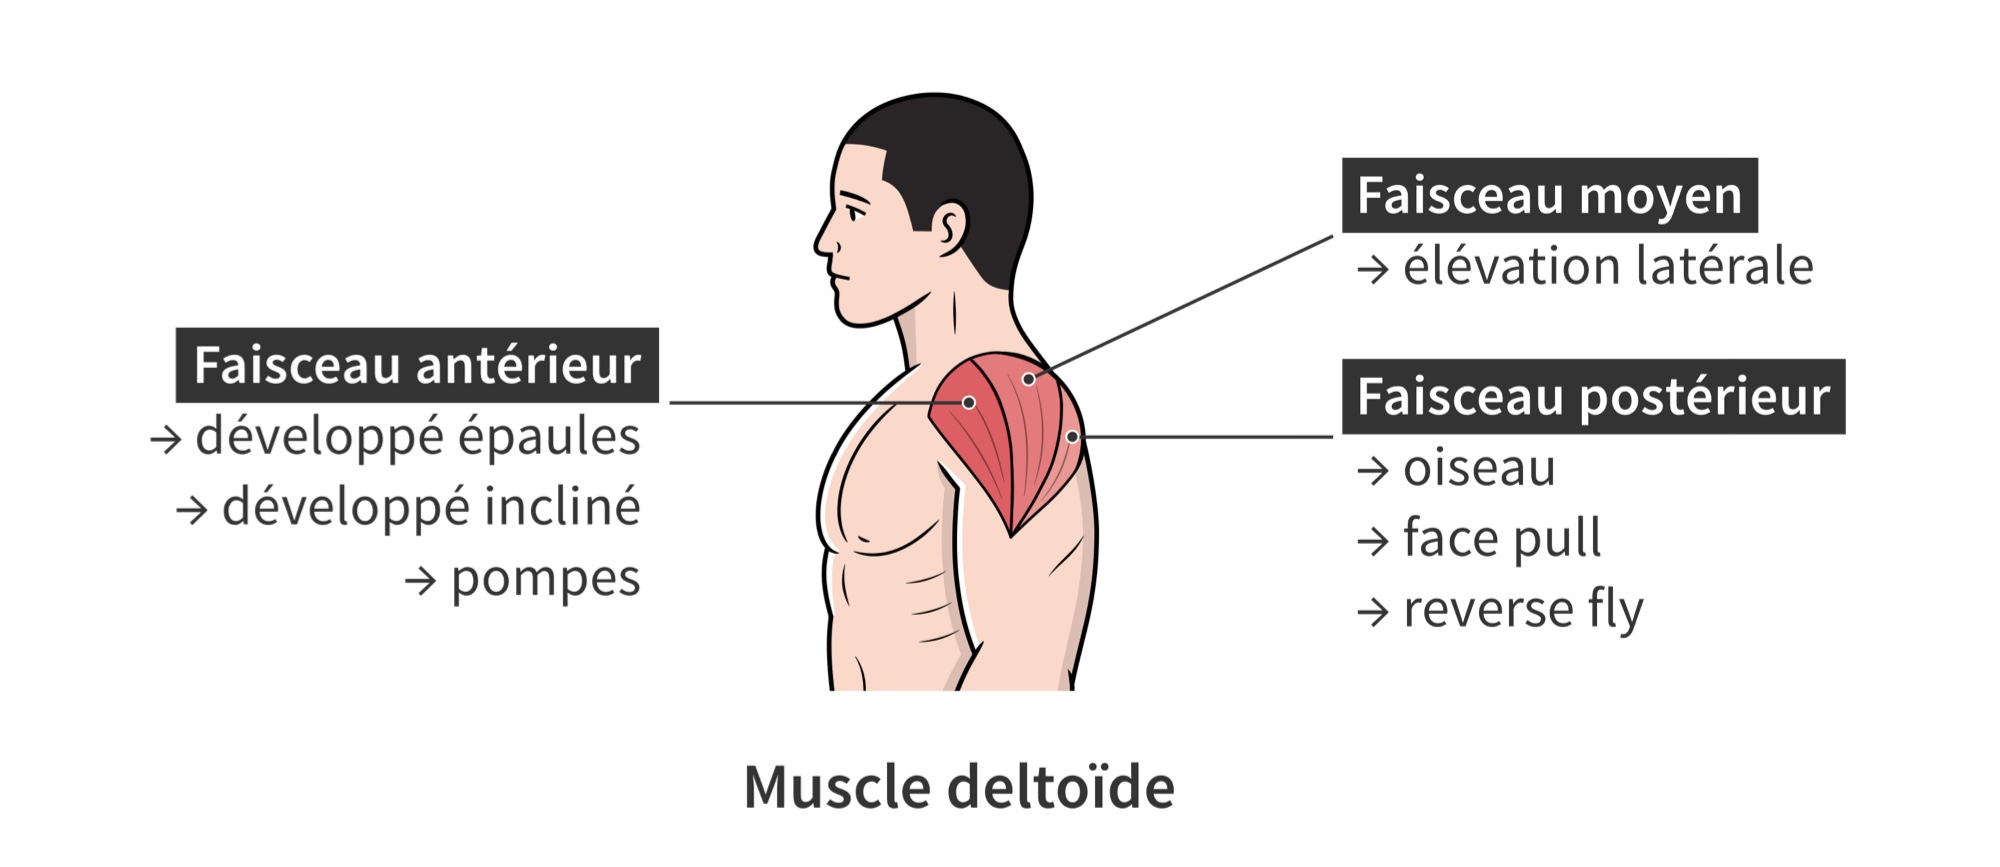 Recrutement du muscle deltoide